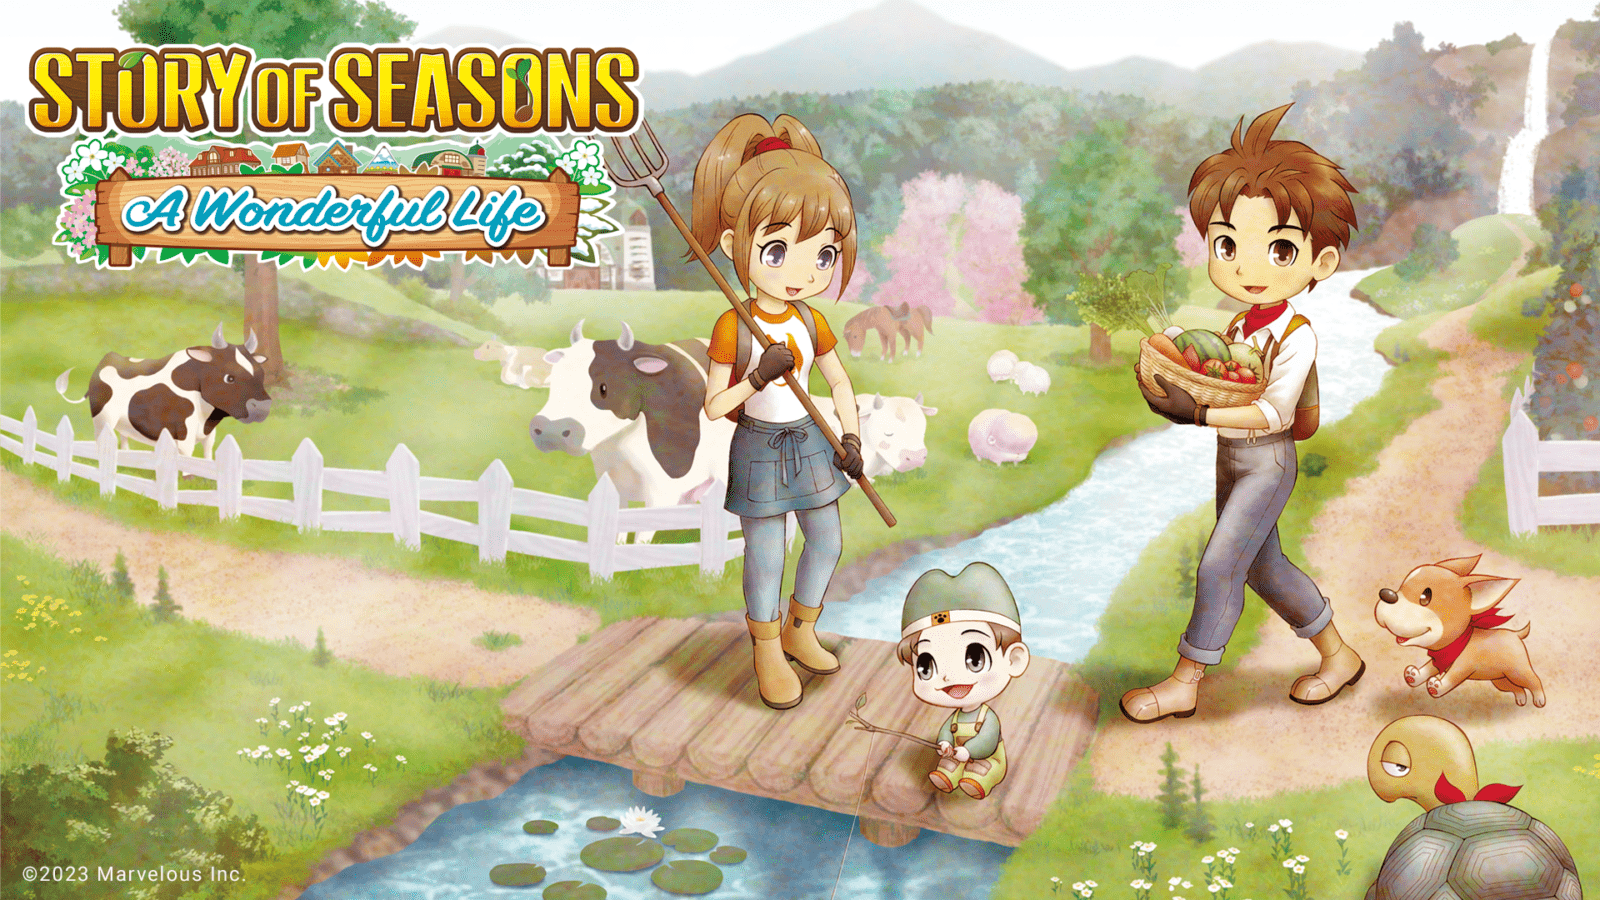 Story of Seasons: A Wonderful Life floresce nos PCs e consoles em junho